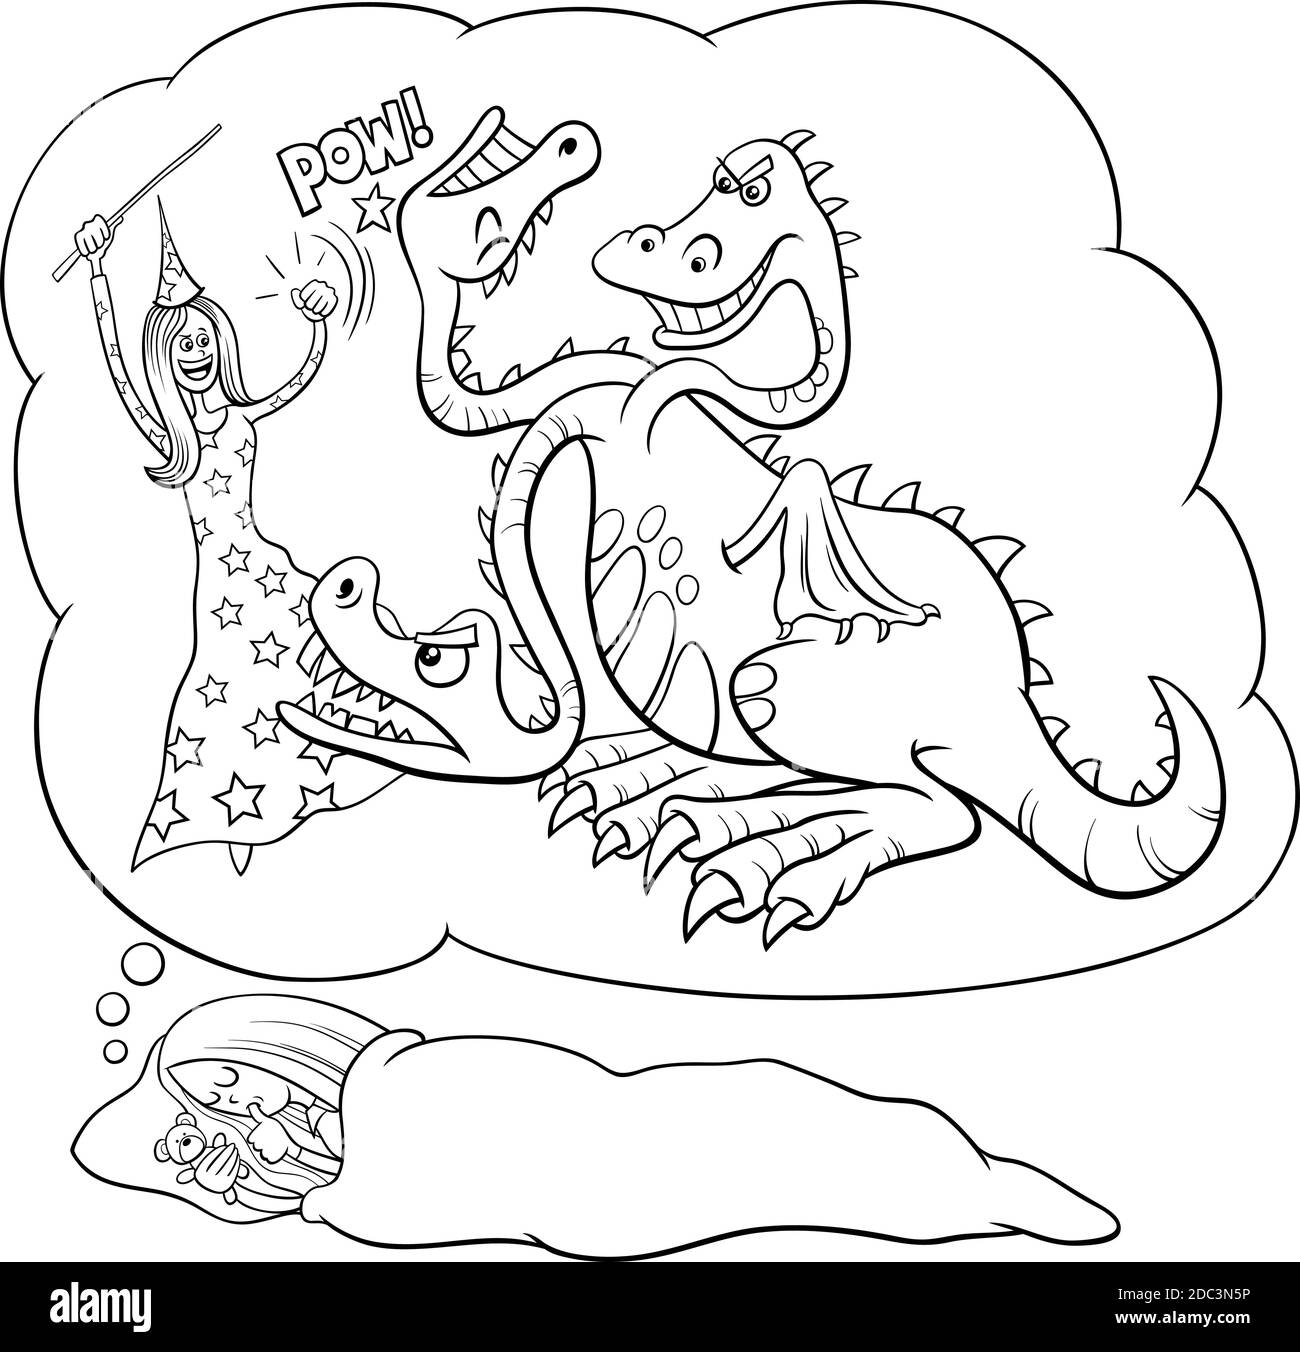 Dibujo de dibujos animados en blanco y negro de una joven durmiente soñando sobre derrotar la página del libro de colores del dragón Ilustración del Vector